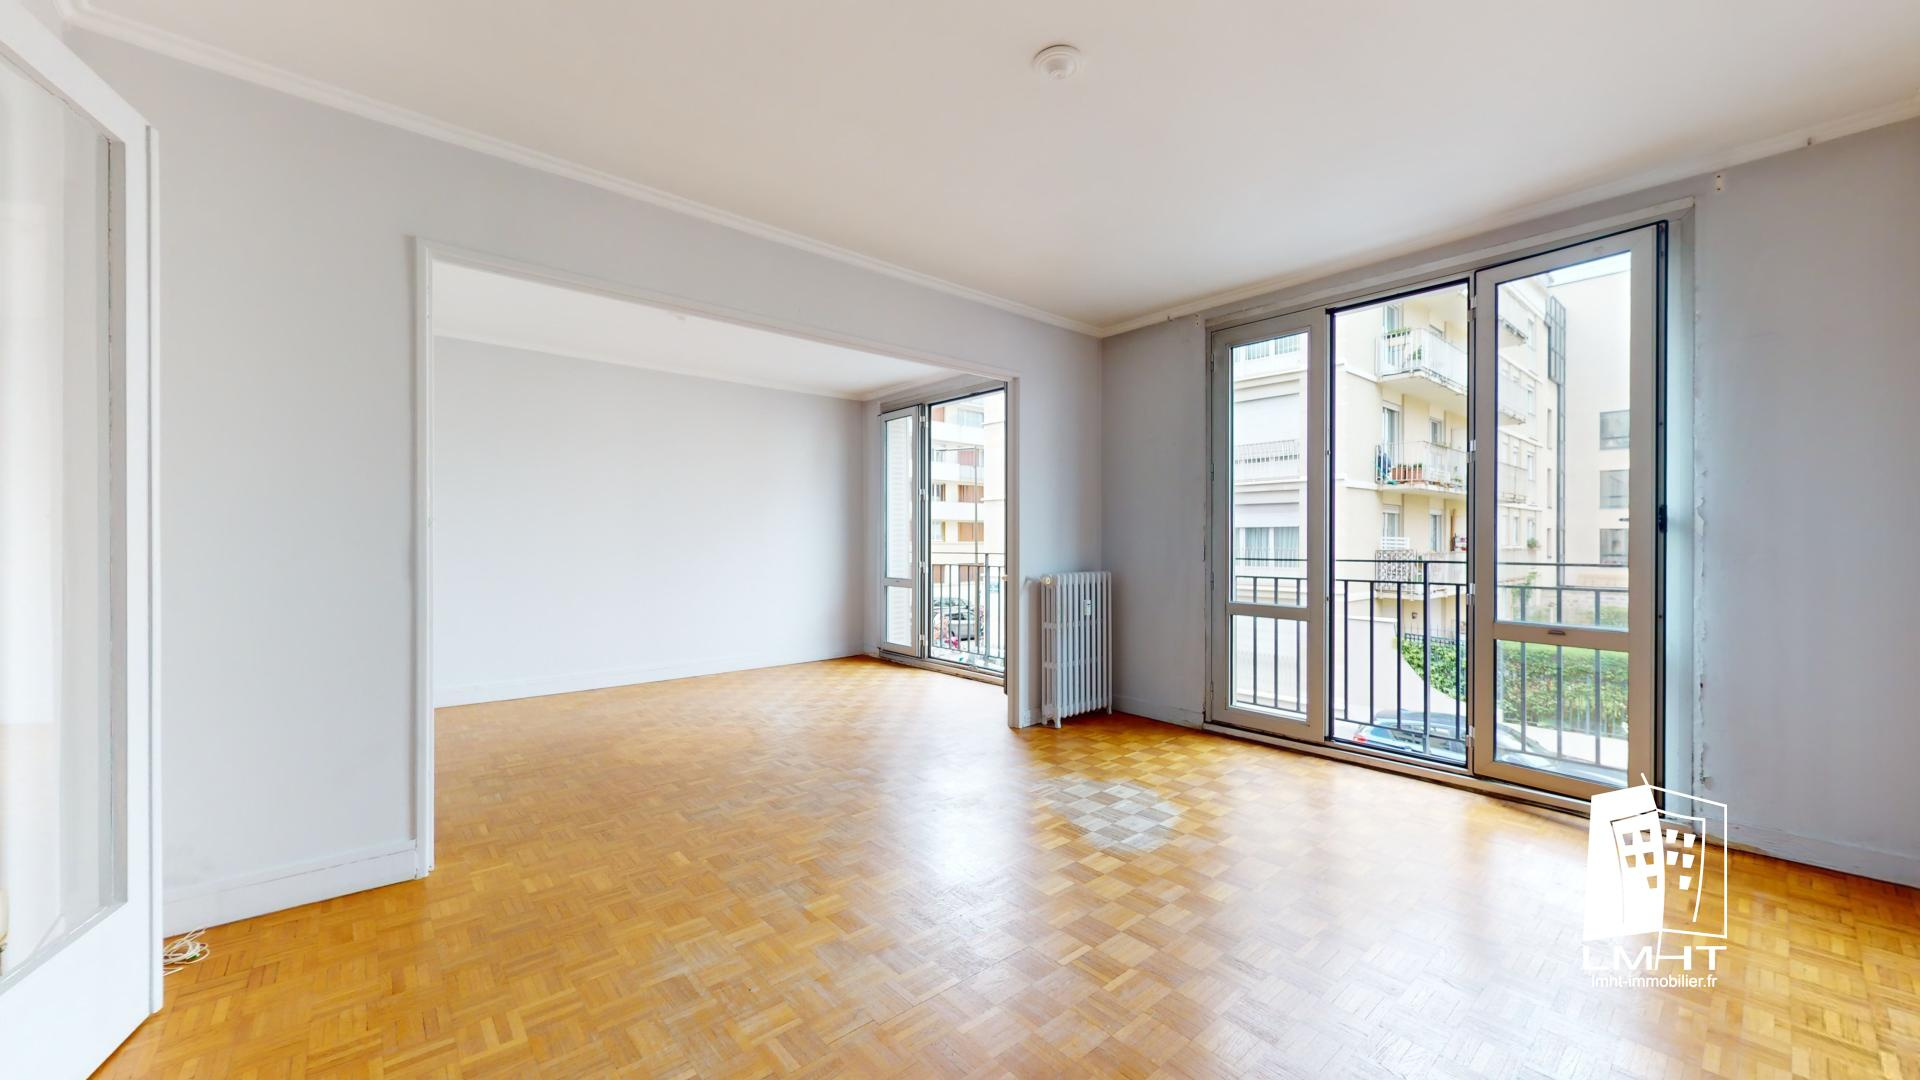 Vente Appartement 69m² 3 Pièces à Boulogne-Billancourt (92100) - Lmht Immobilier